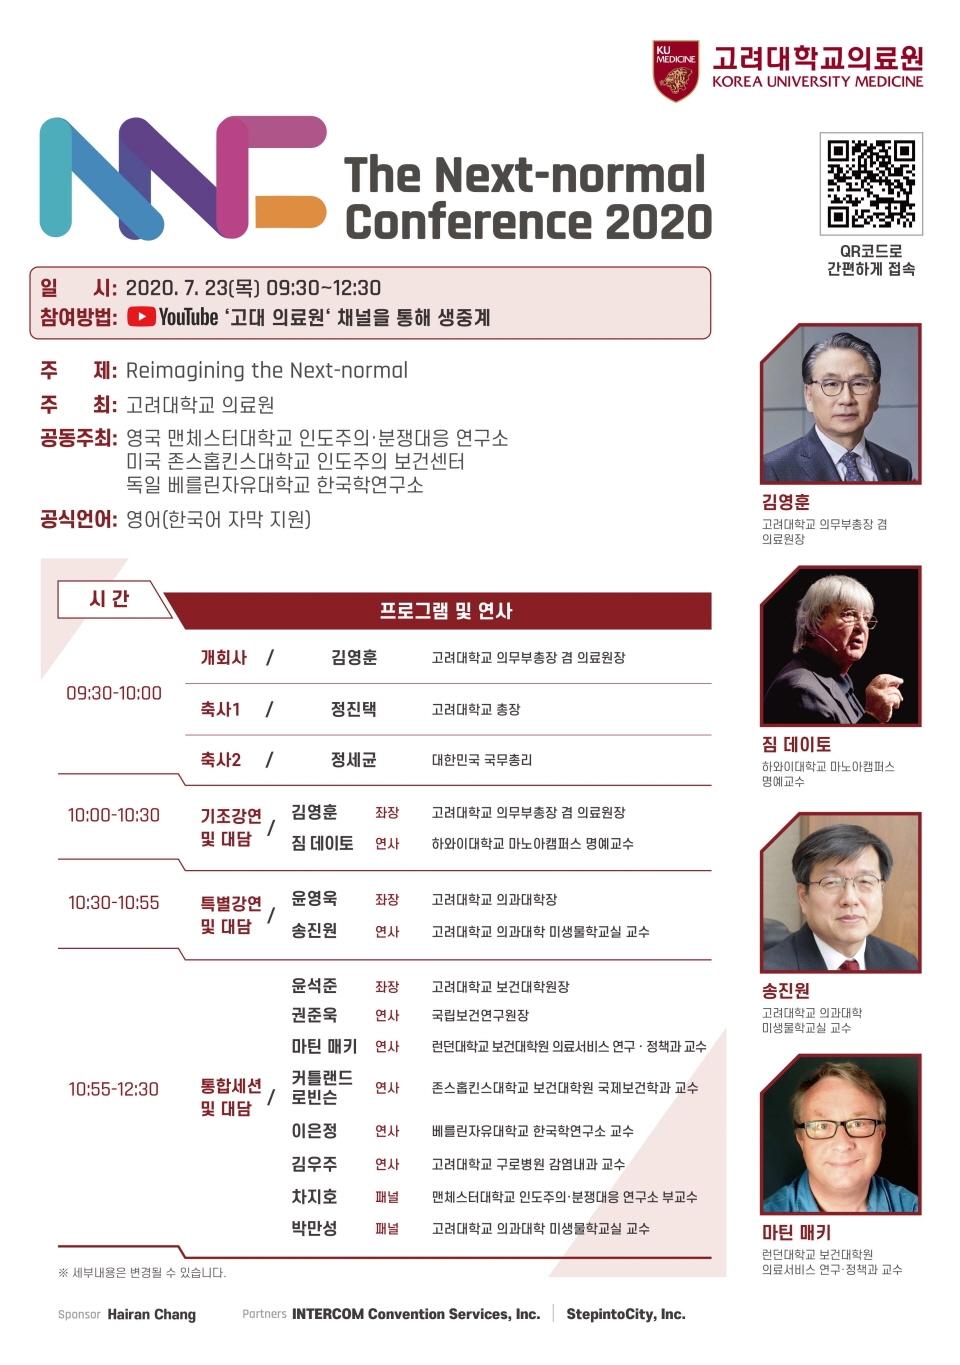 23일 열리는 ‘넥스트 노멀 콘퍼런스(Next Normal Conference) 2020’ 일정표